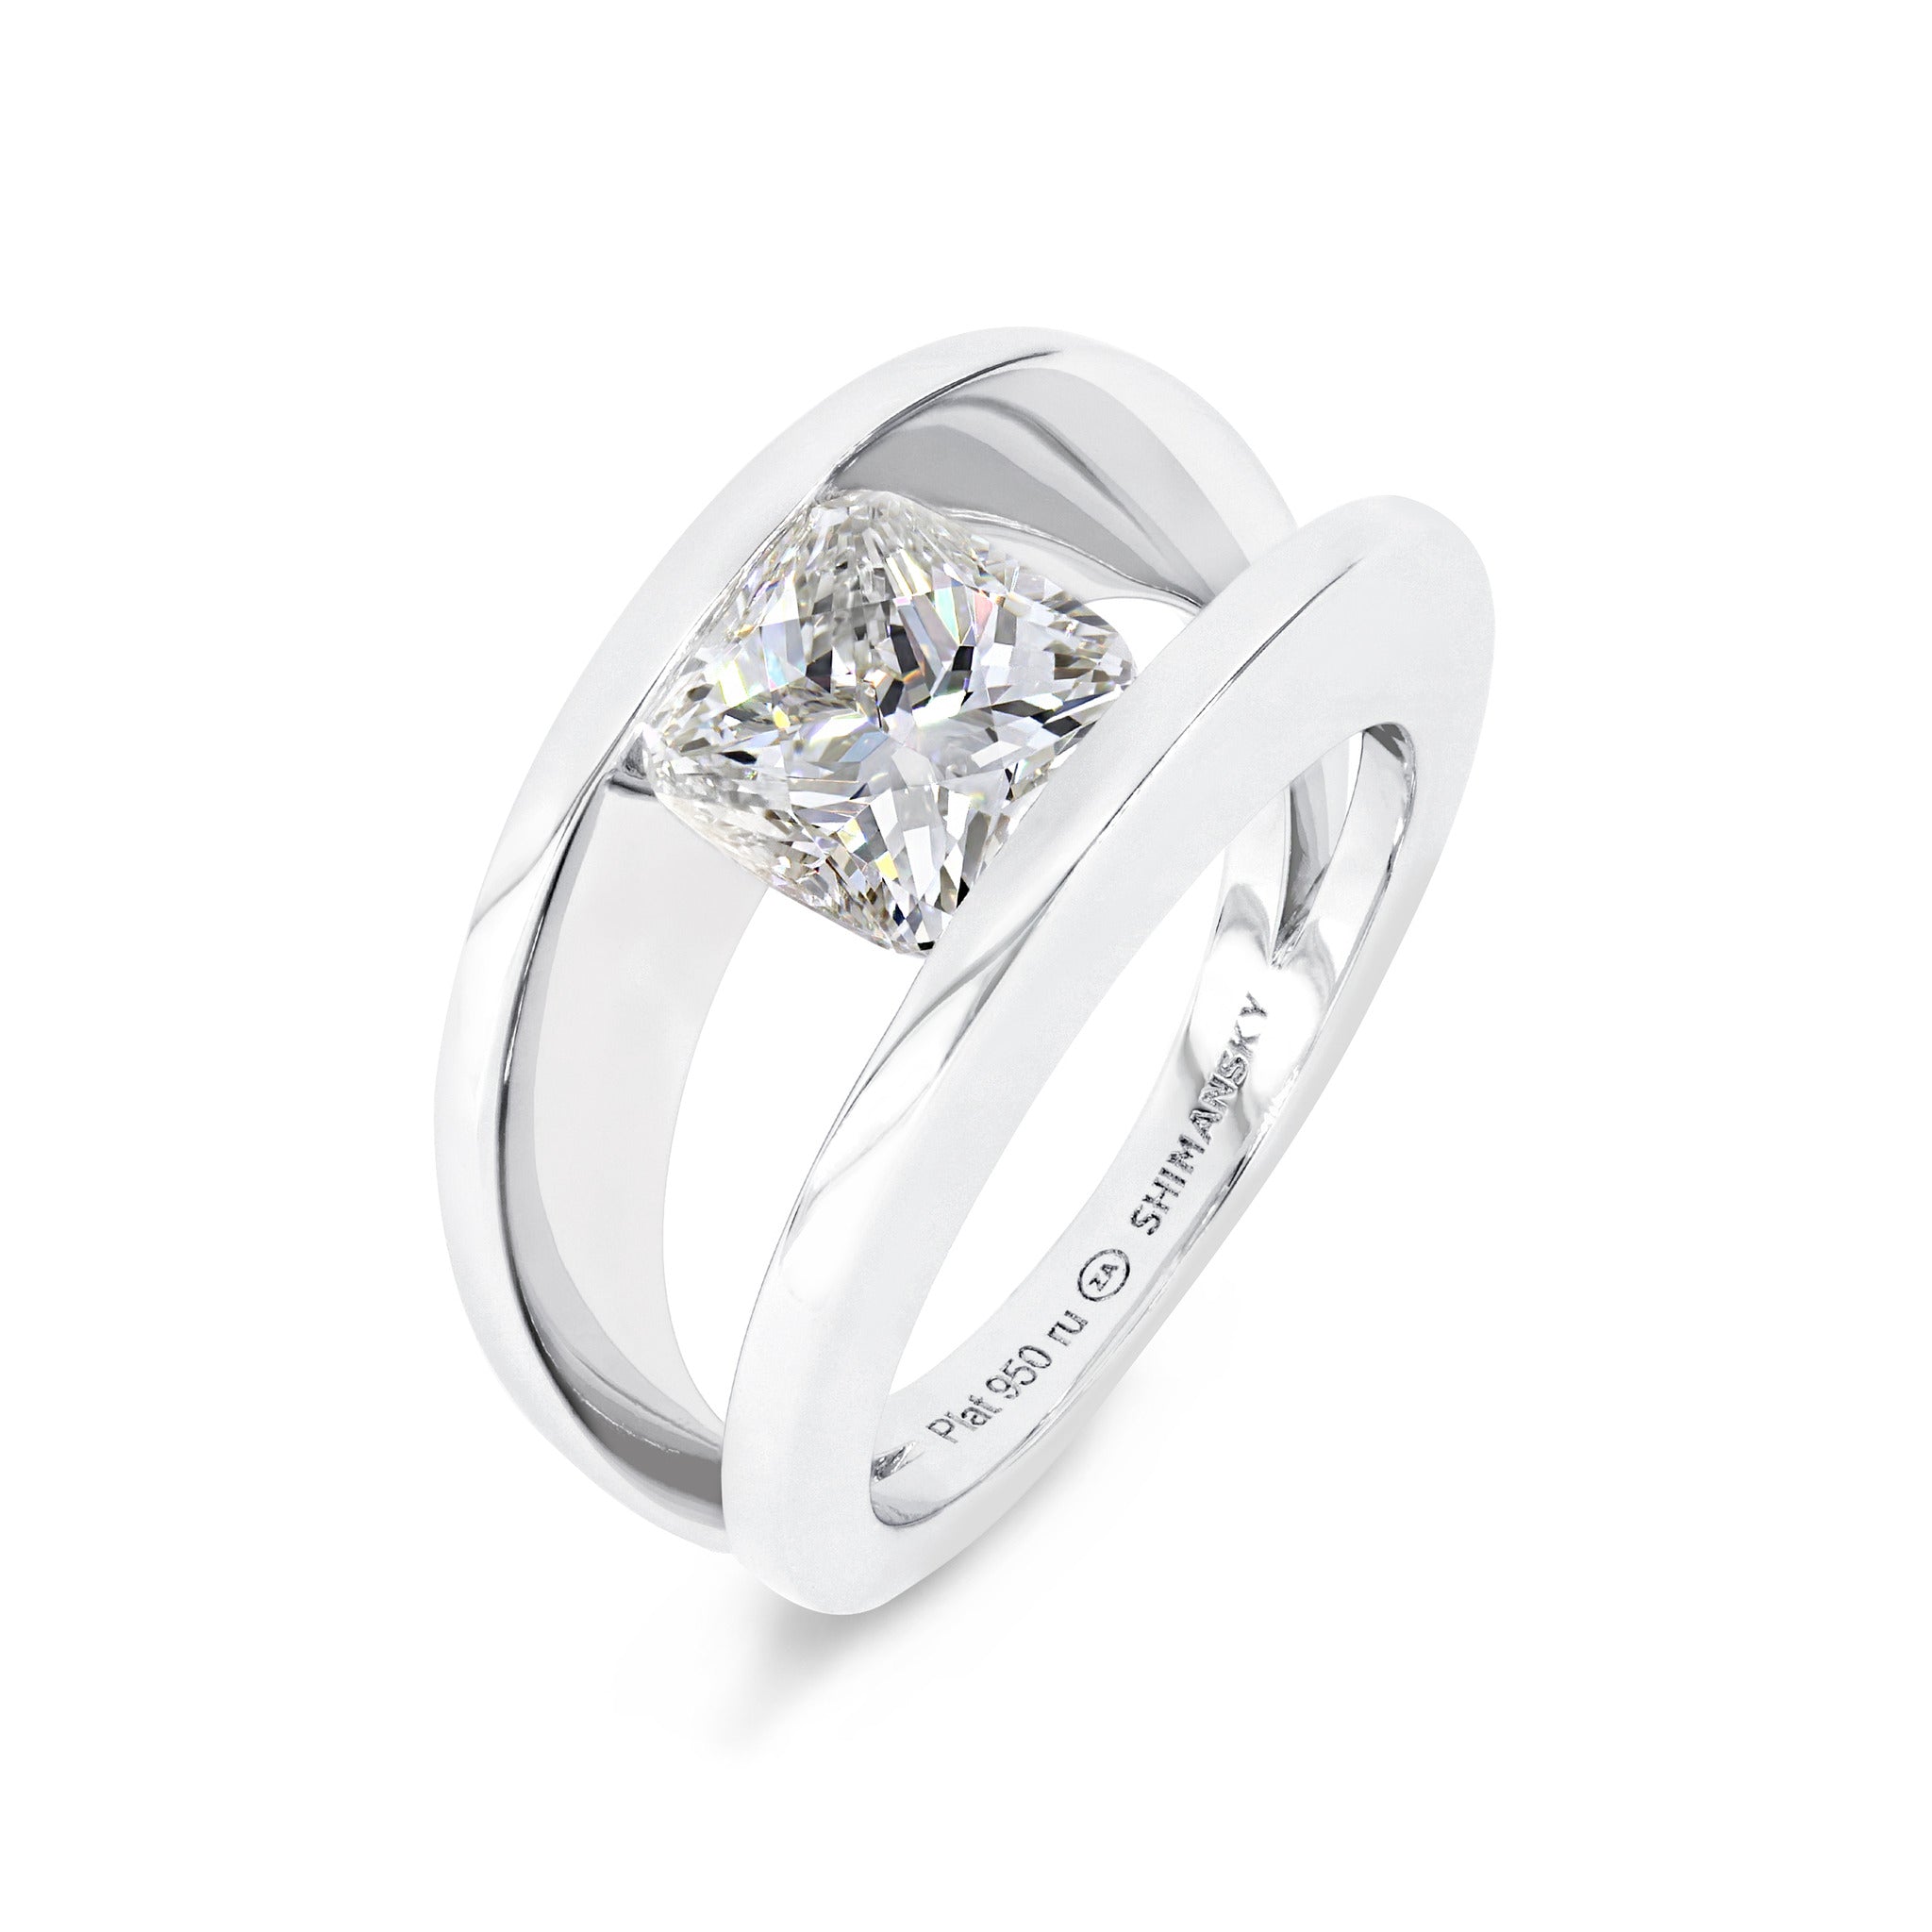 2.20 Carat Millennium Diamond Engagement Ring 3D View - Shimansky